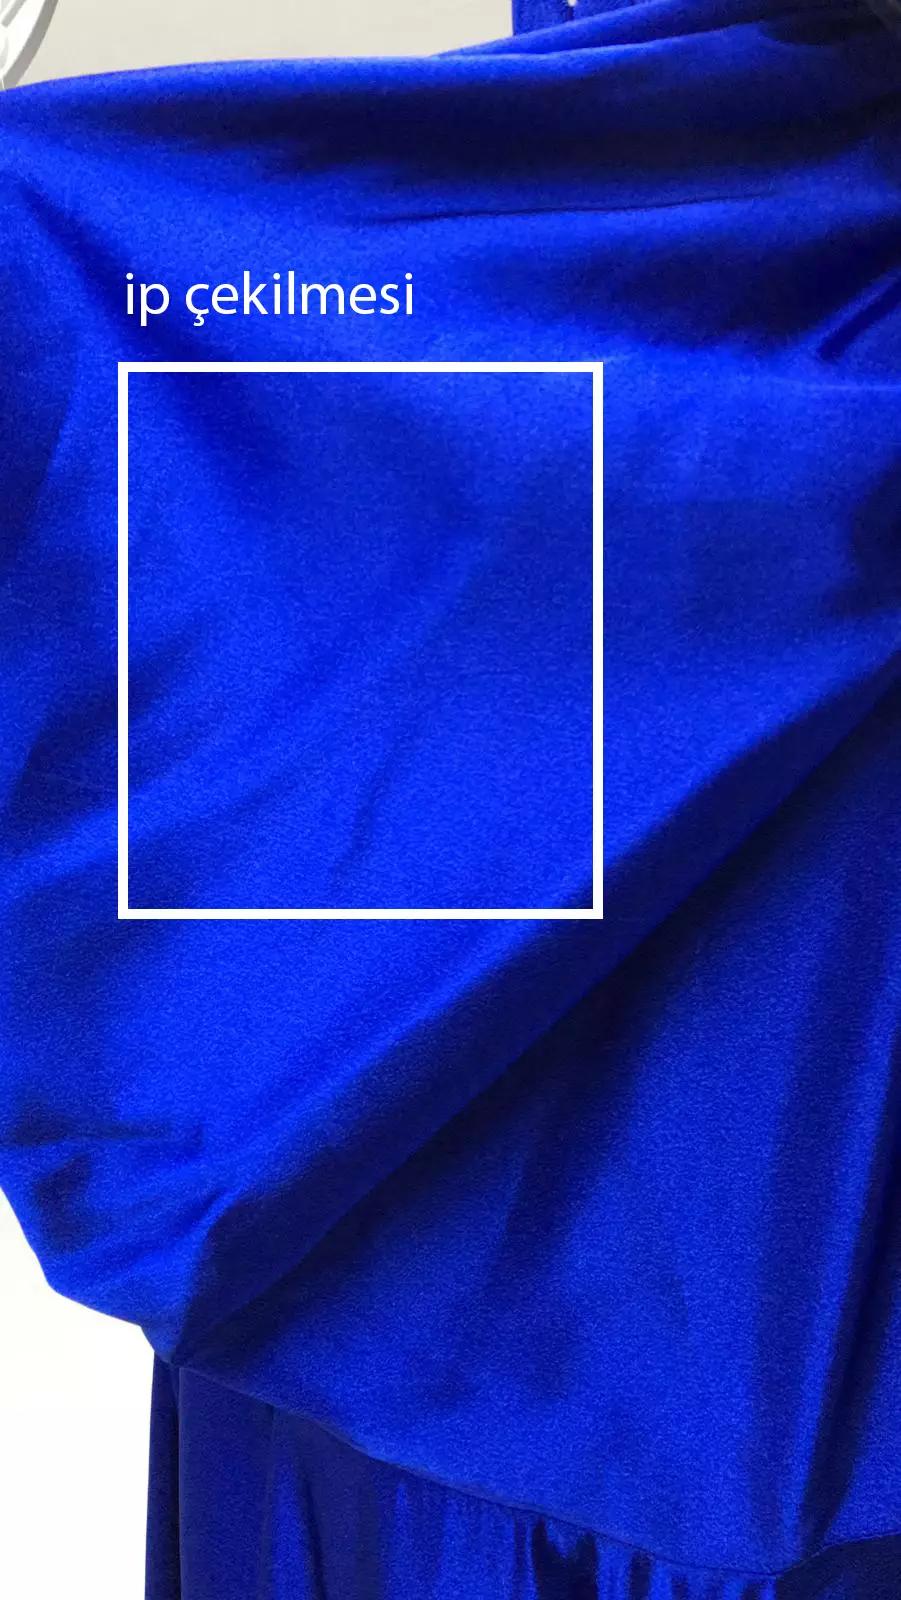 Blue satin sleeveless maxi dress